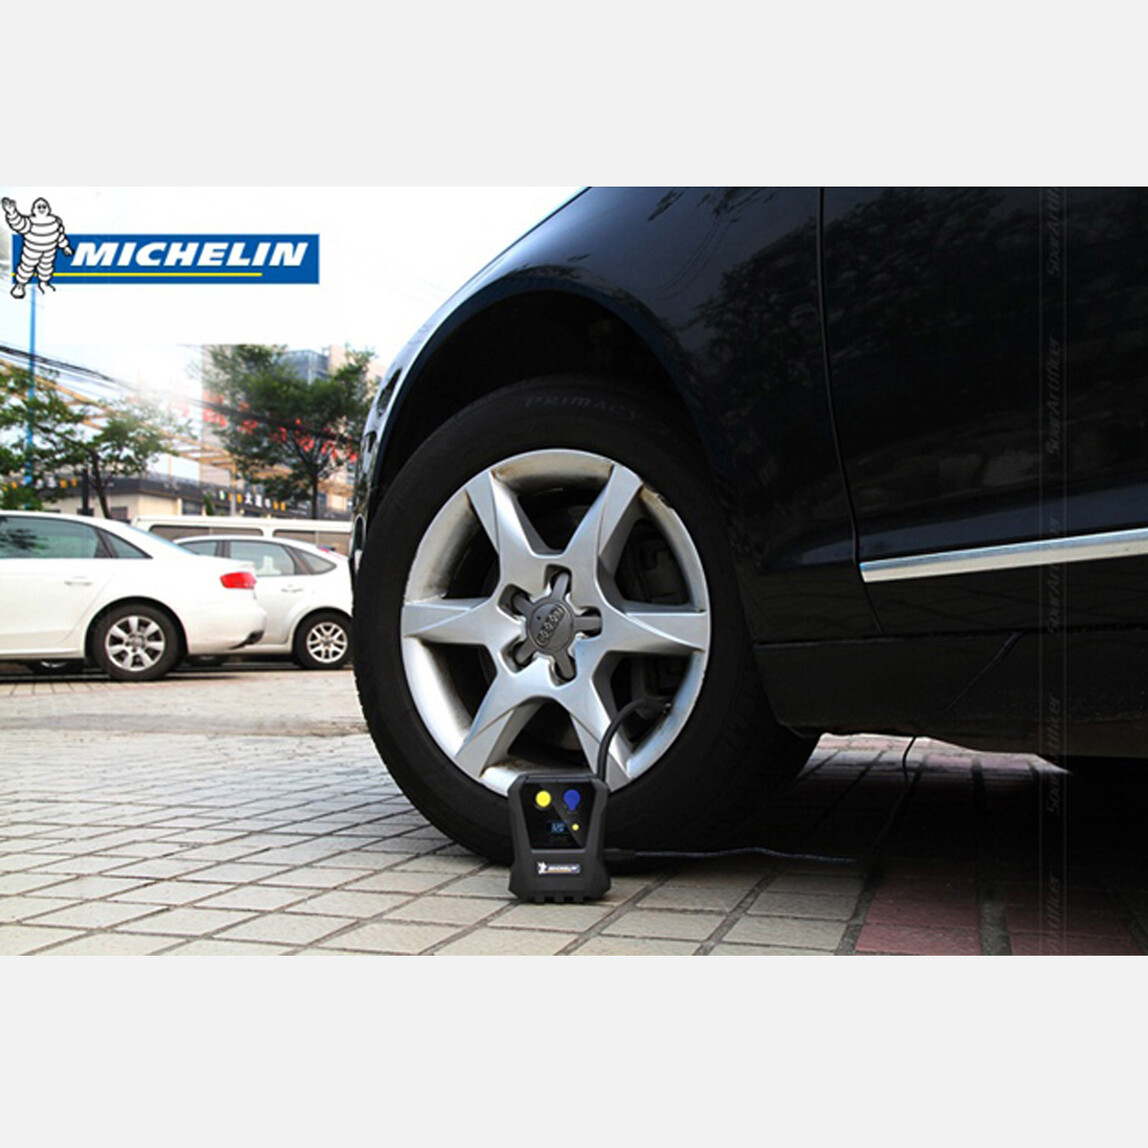    Michelin MC12264 12V 120PSI Dijital Basınç Göstergeli Hava Pompası 